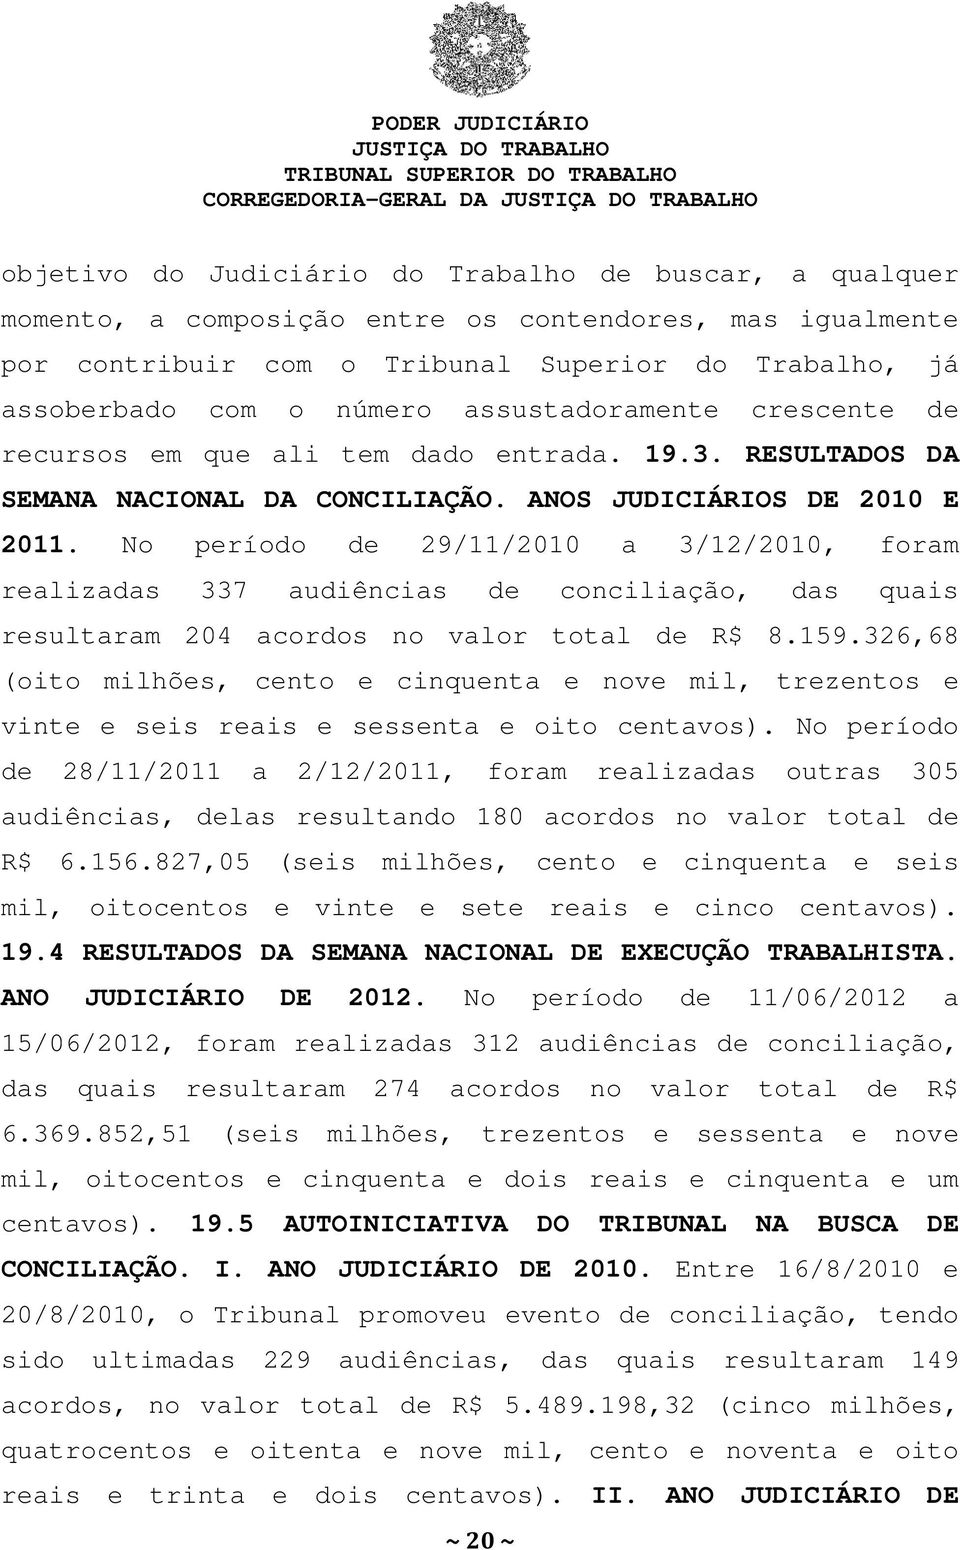 No período de 29/11/2010 a 3/12/2010, foram realizadas 337 audiências de conciliação, das quais resultaram 204 acordos no valor total de R$ 8.159.